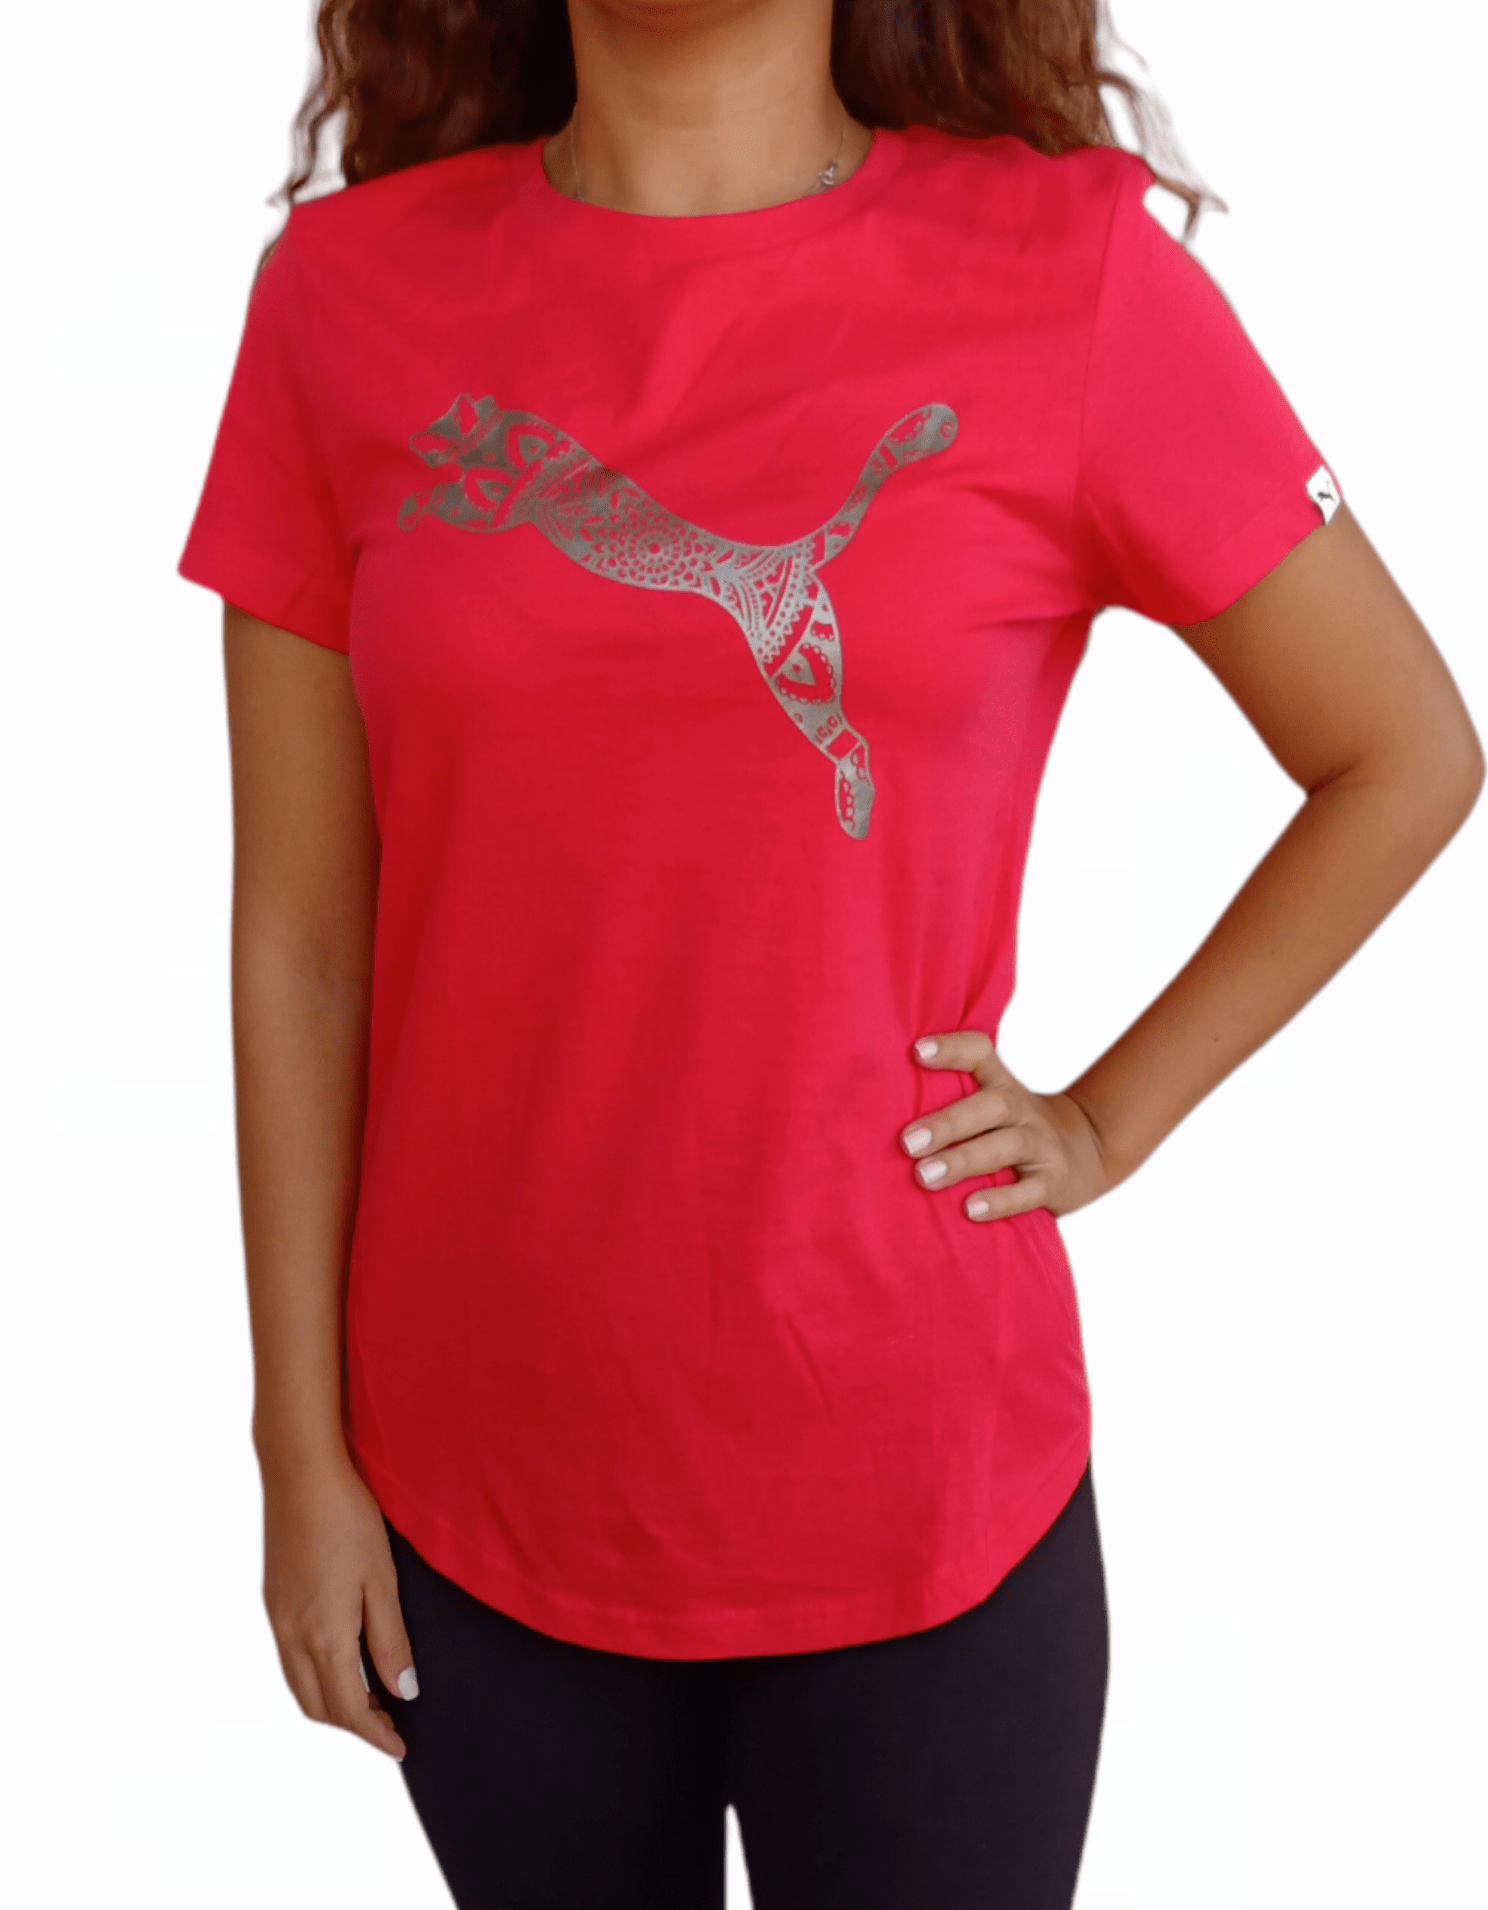 ElOutlet Women T-Shirt Red Sports T-shirt